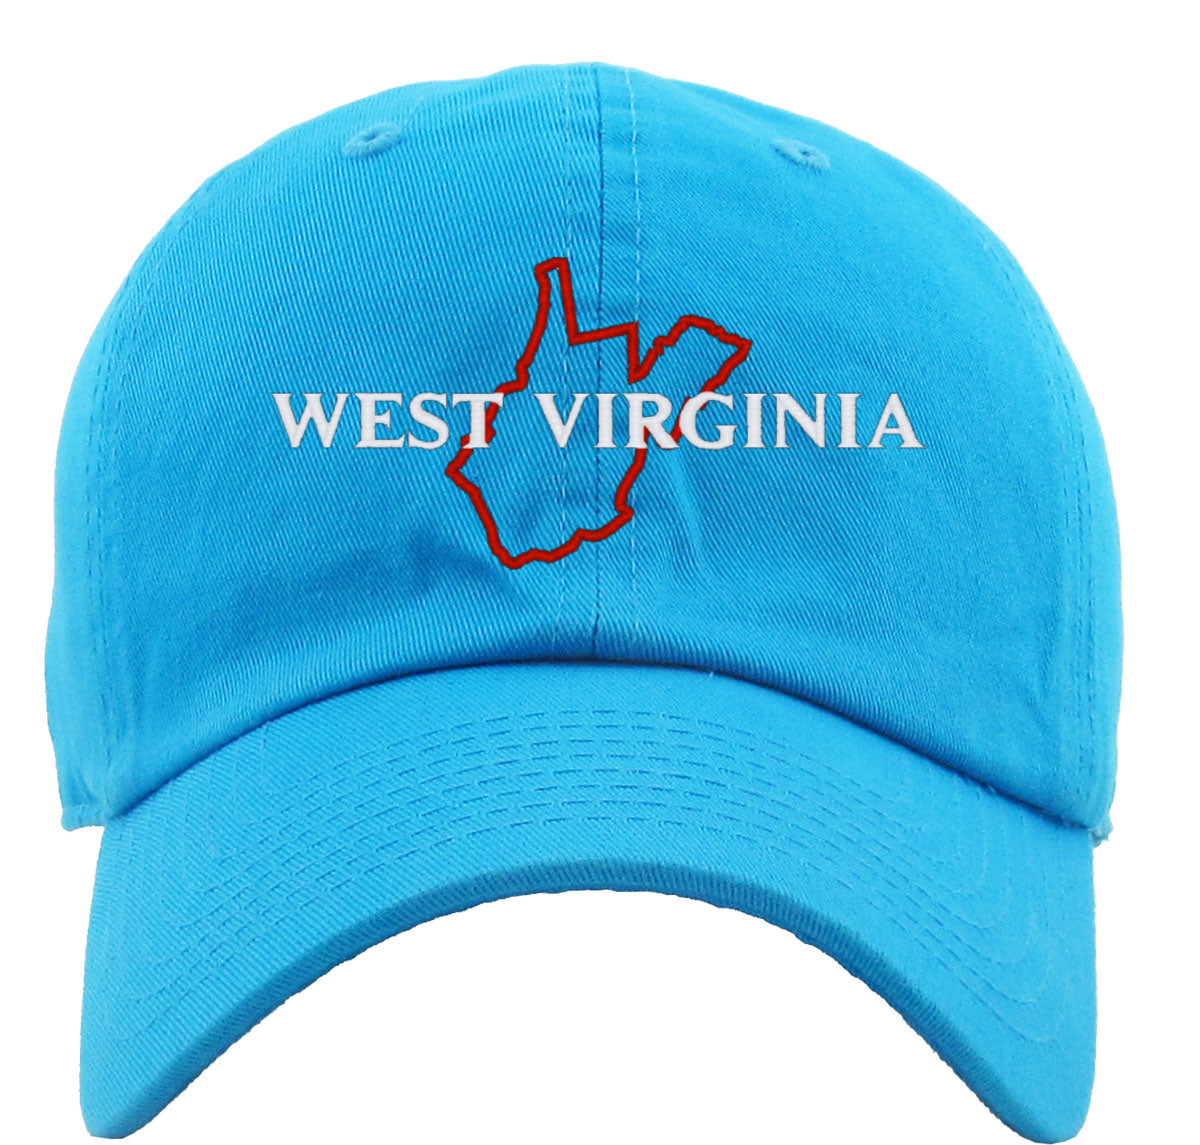 West Virginia Premium Baseball Cap